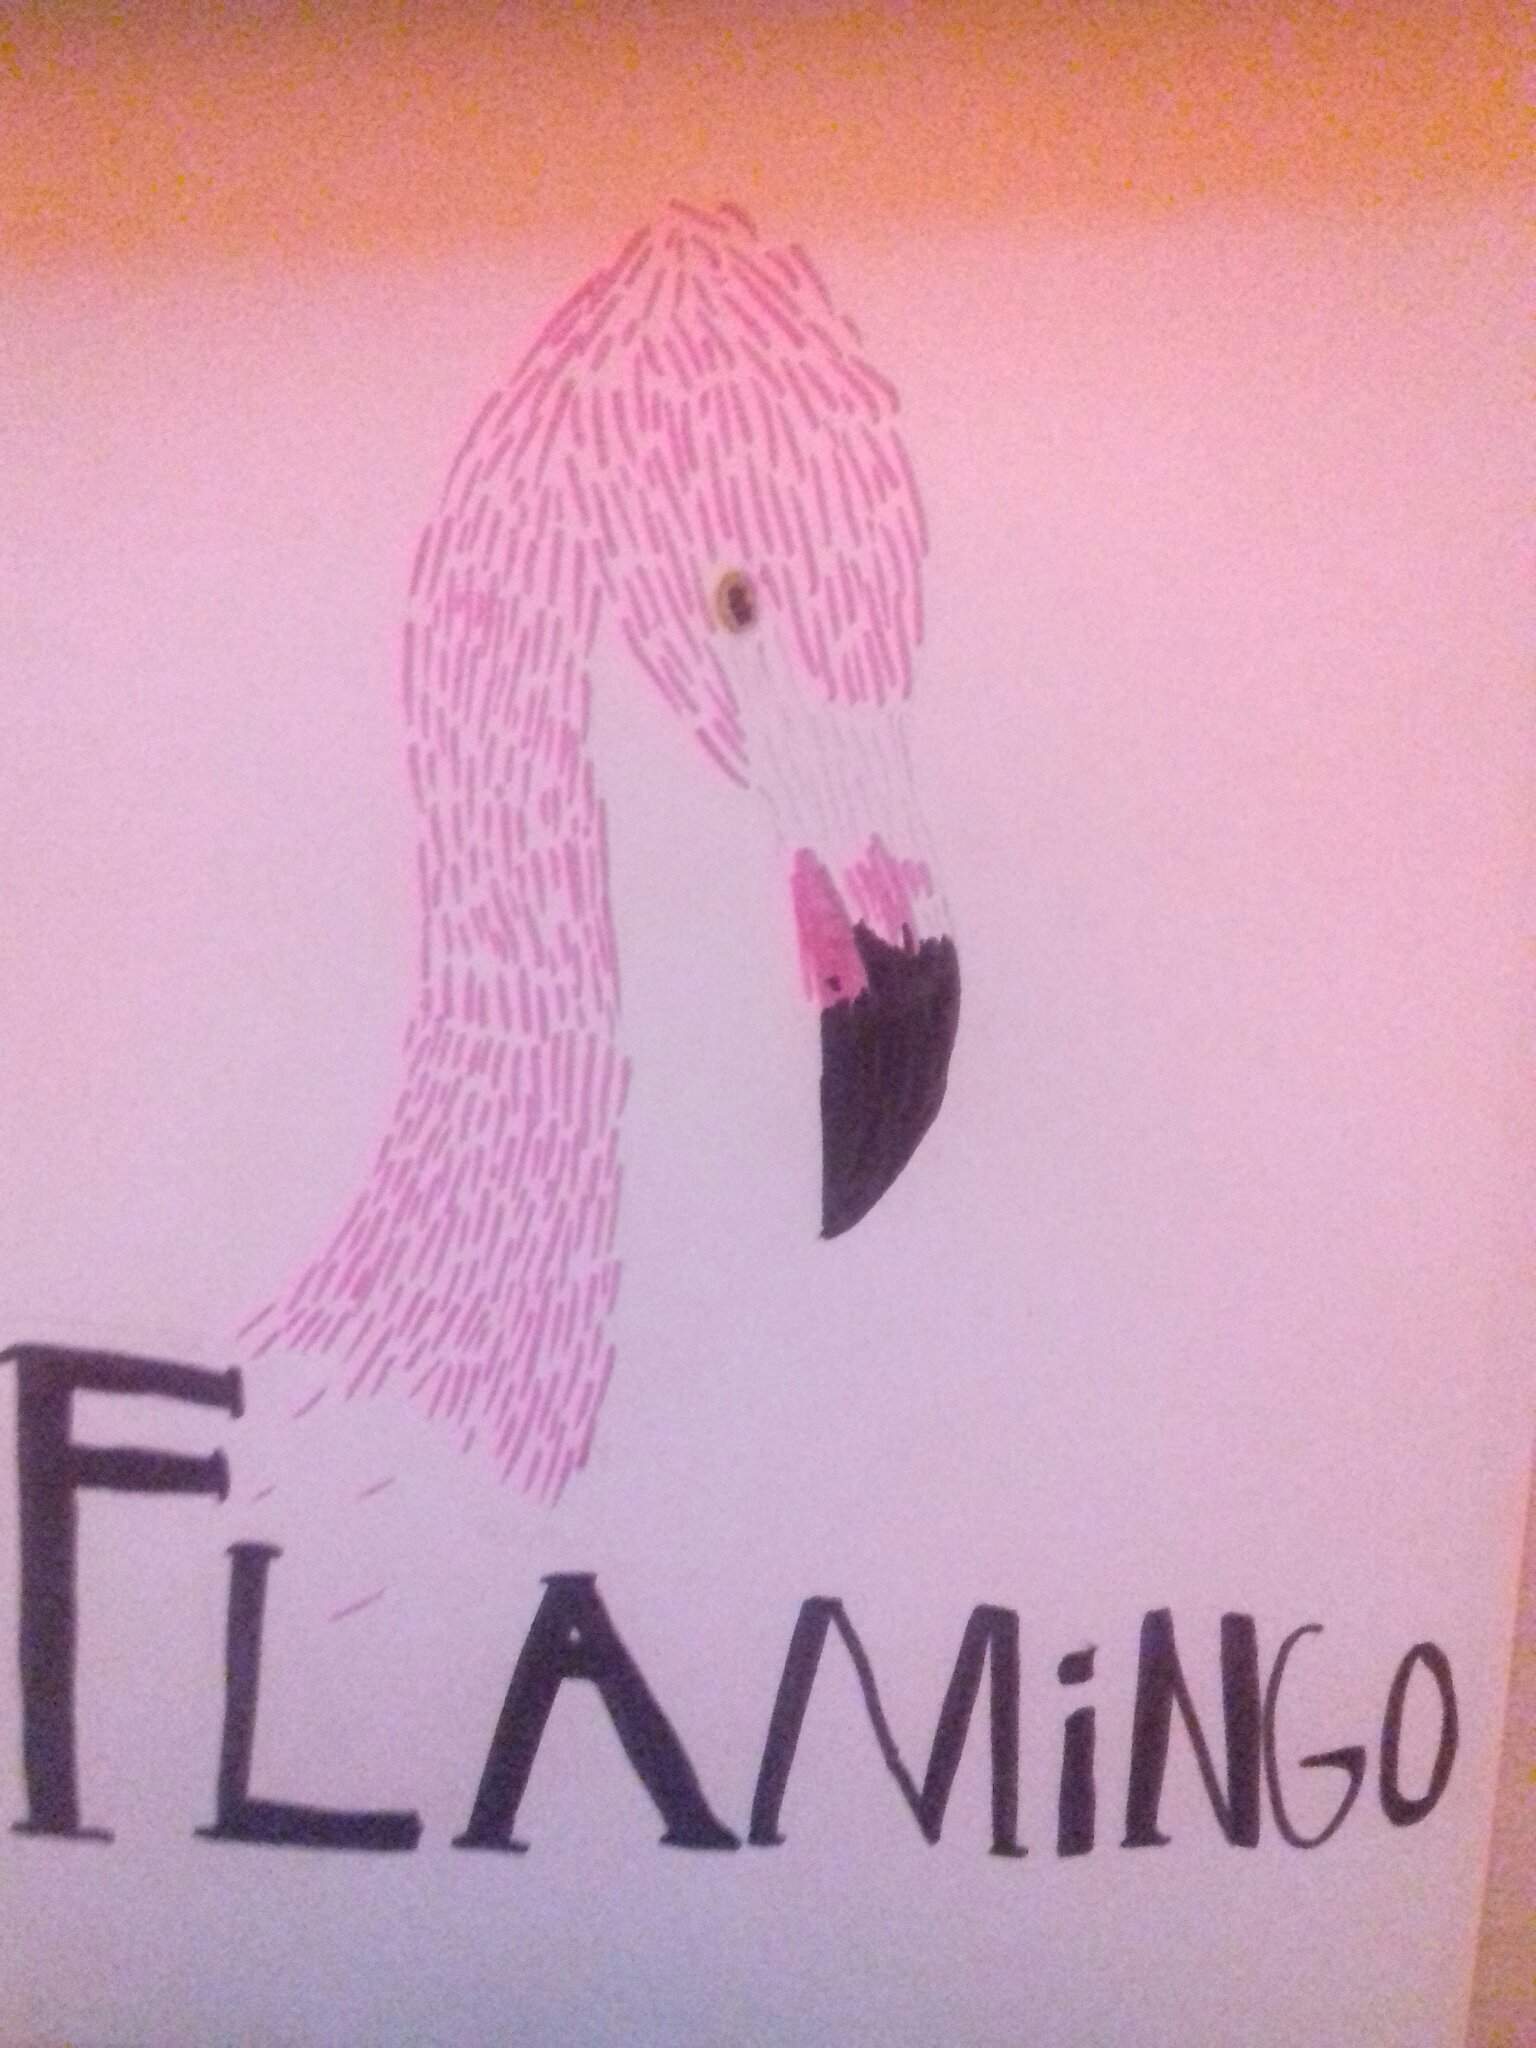 Flamingo Fanart